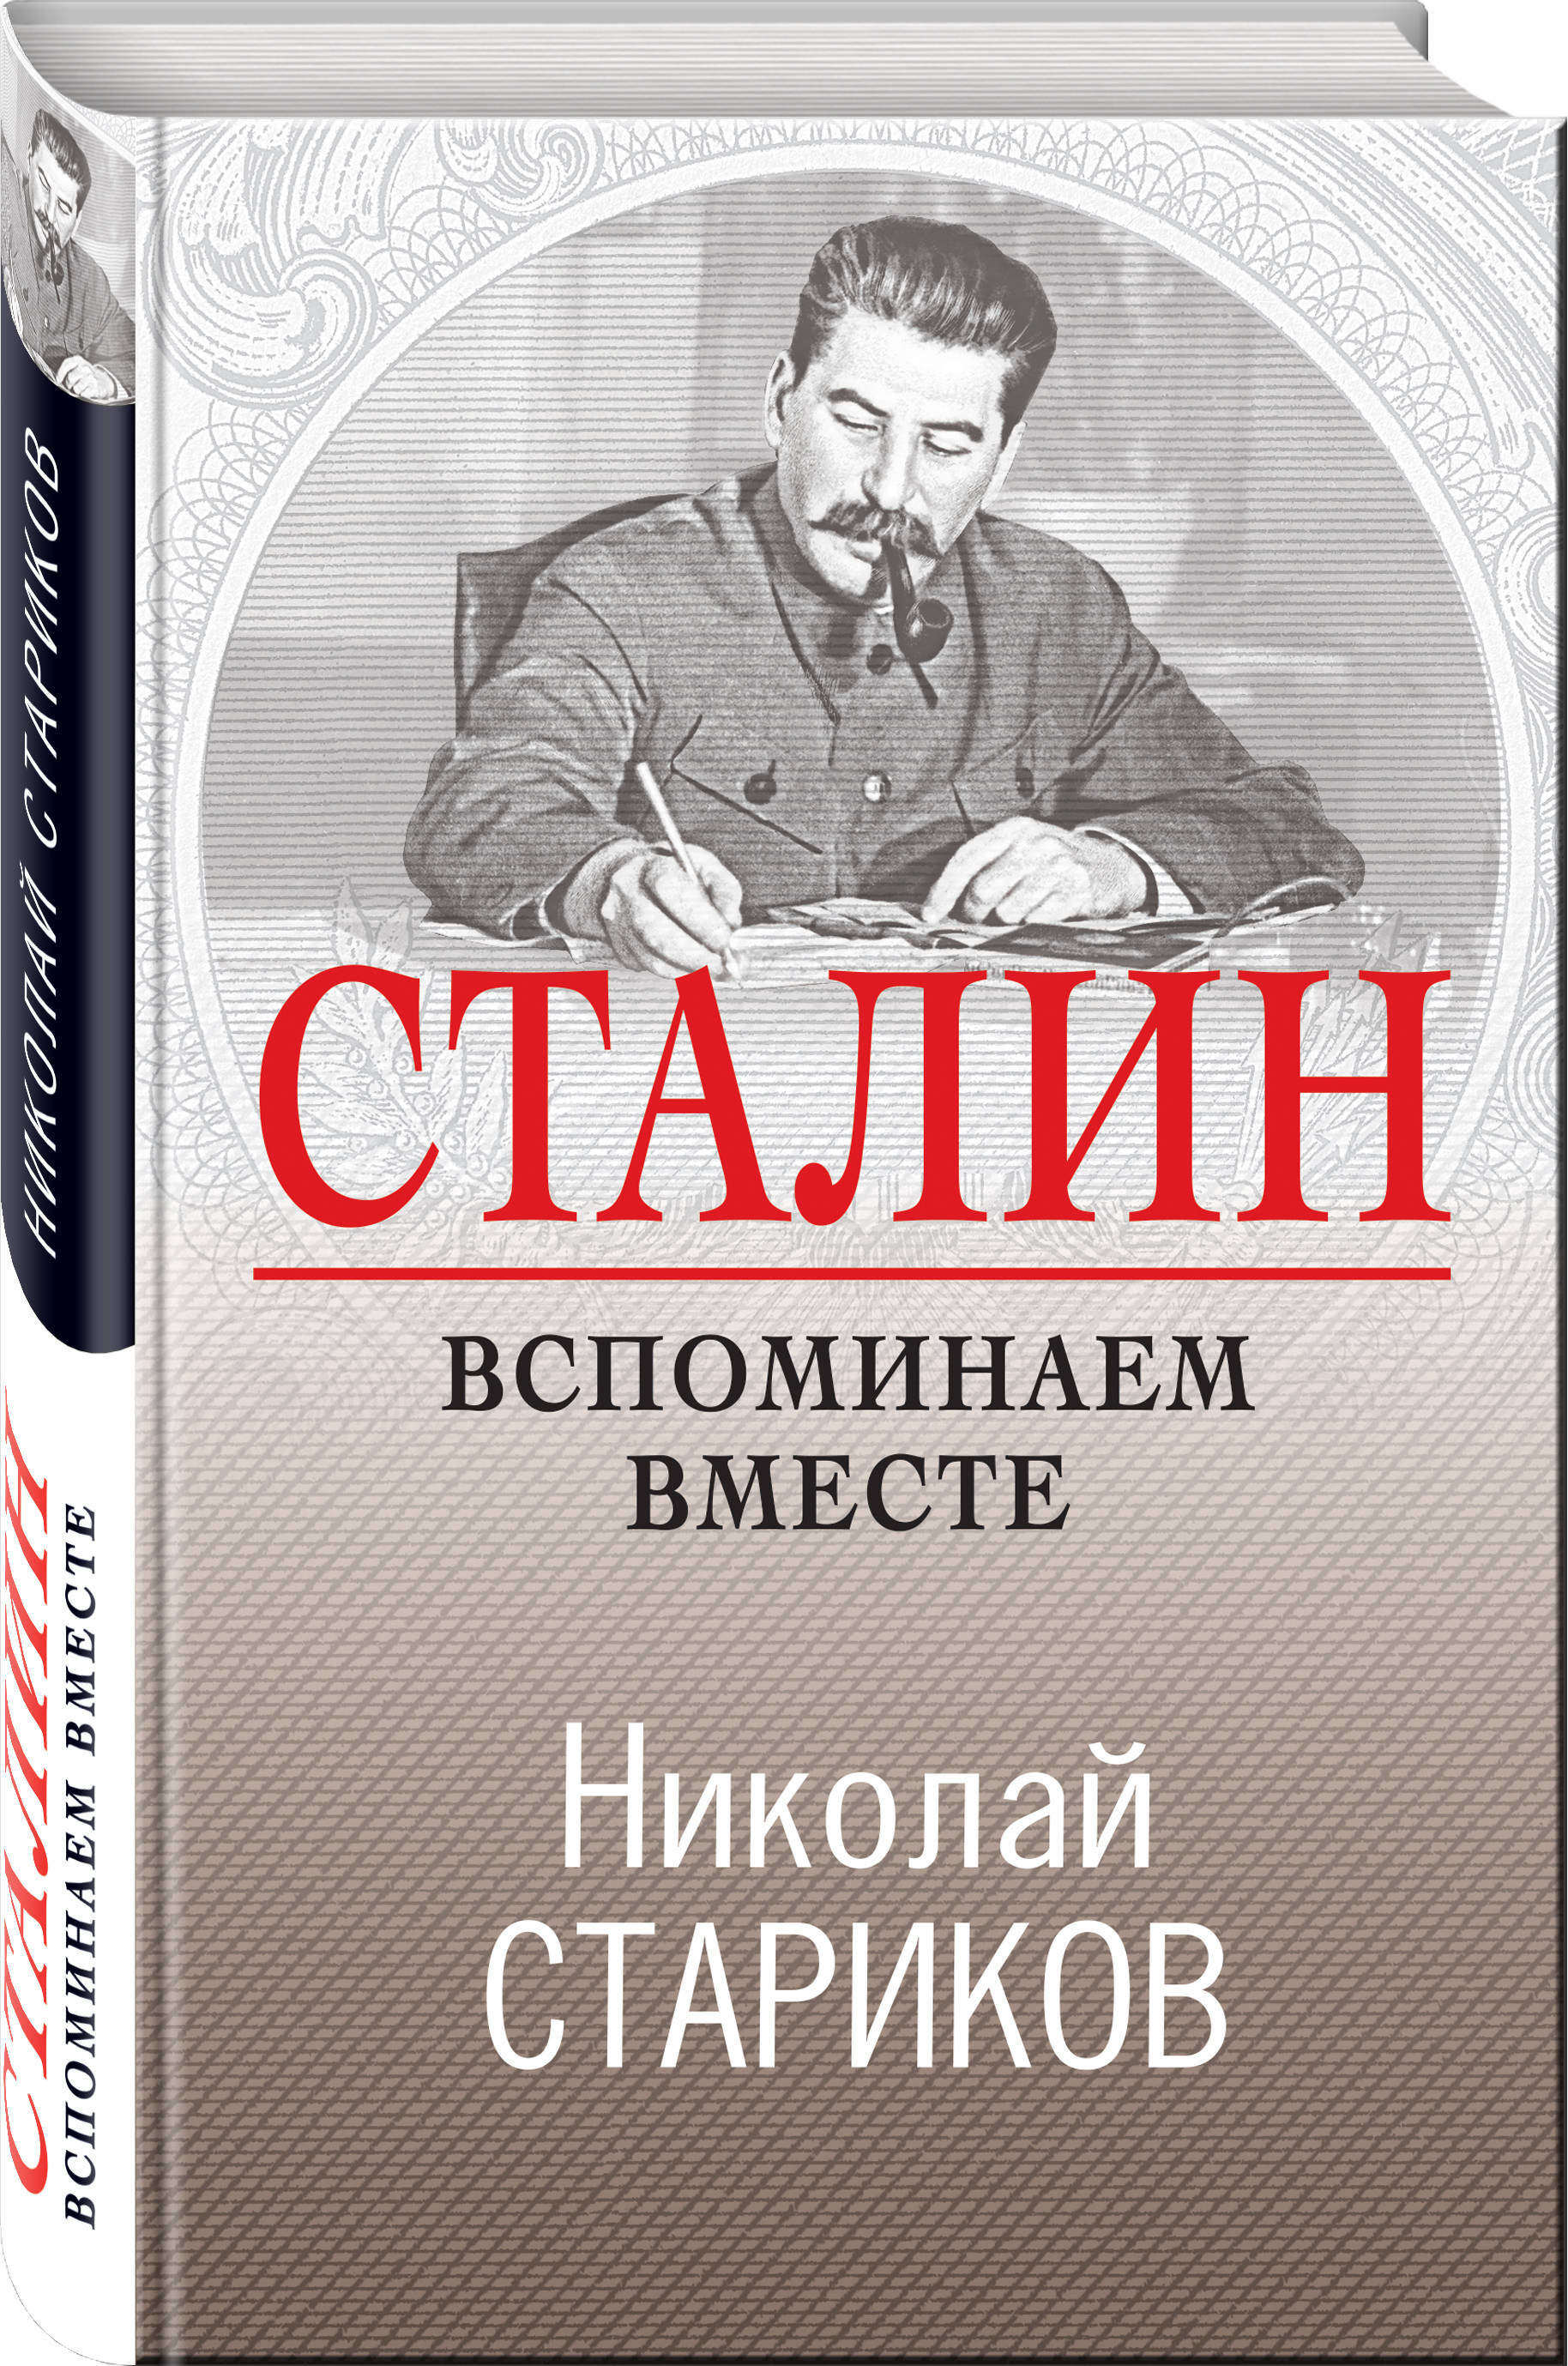 Сталинские книги купить. Стариков вспоминаем Сталина книга.